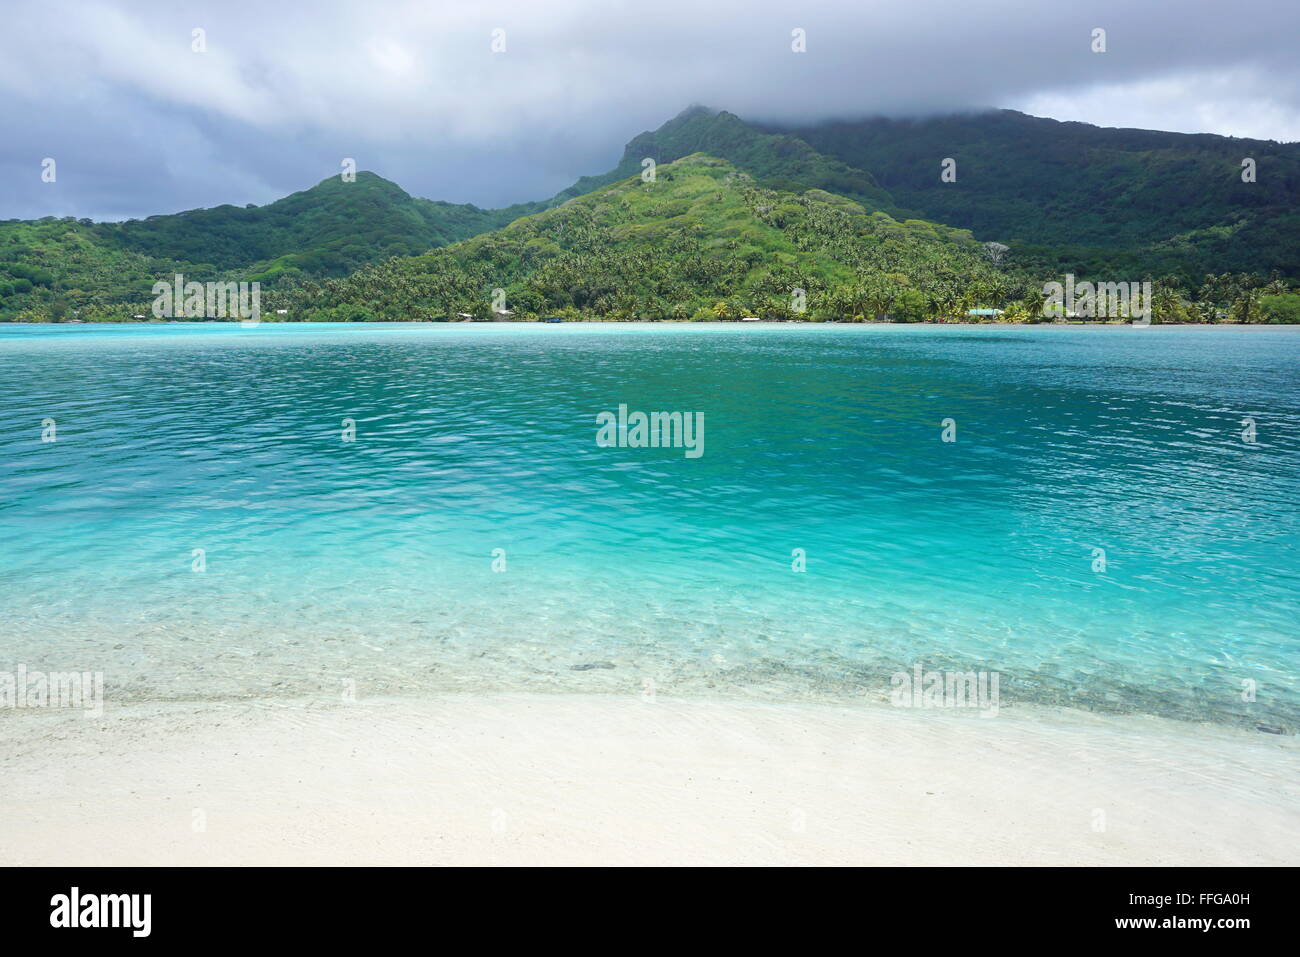 Paesaggio di Huahine isola vista da una spiaggia di sabbia bianca con acqua turchese in primo piano, oceano pacifico, Polinesia Francese Foto Stock